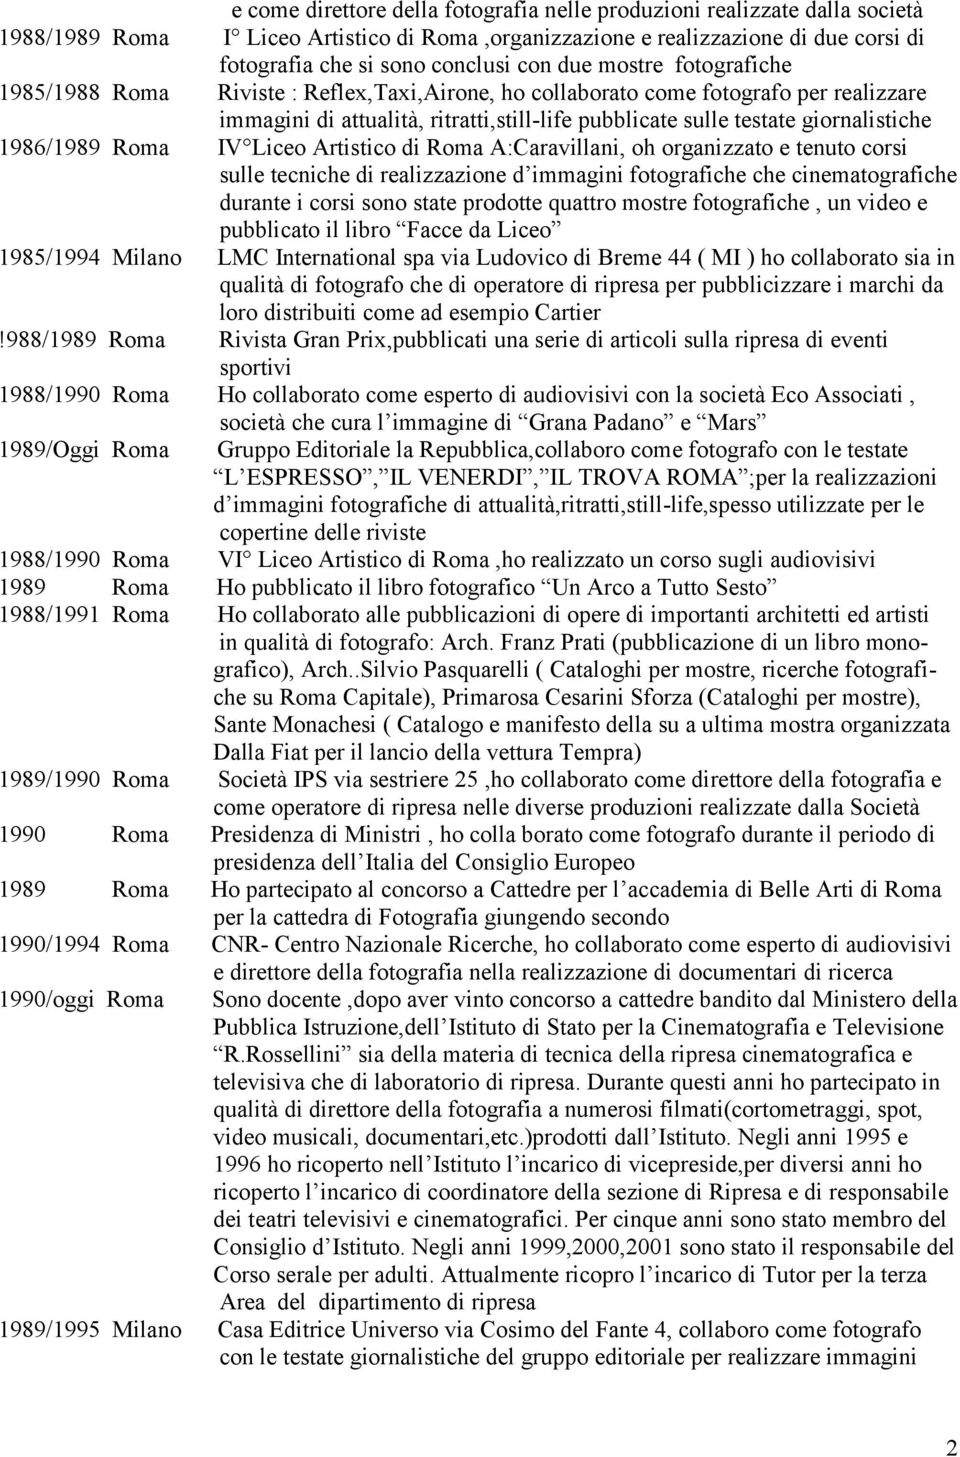 1986/1989 Roma IV Liceo Artistico di Roma A:Caravillani, oh organizzato e tenuto corsi sulle tecniche di realizzazione d immagini fotografiche che cinematografiche durante i corsi sono state prodotte